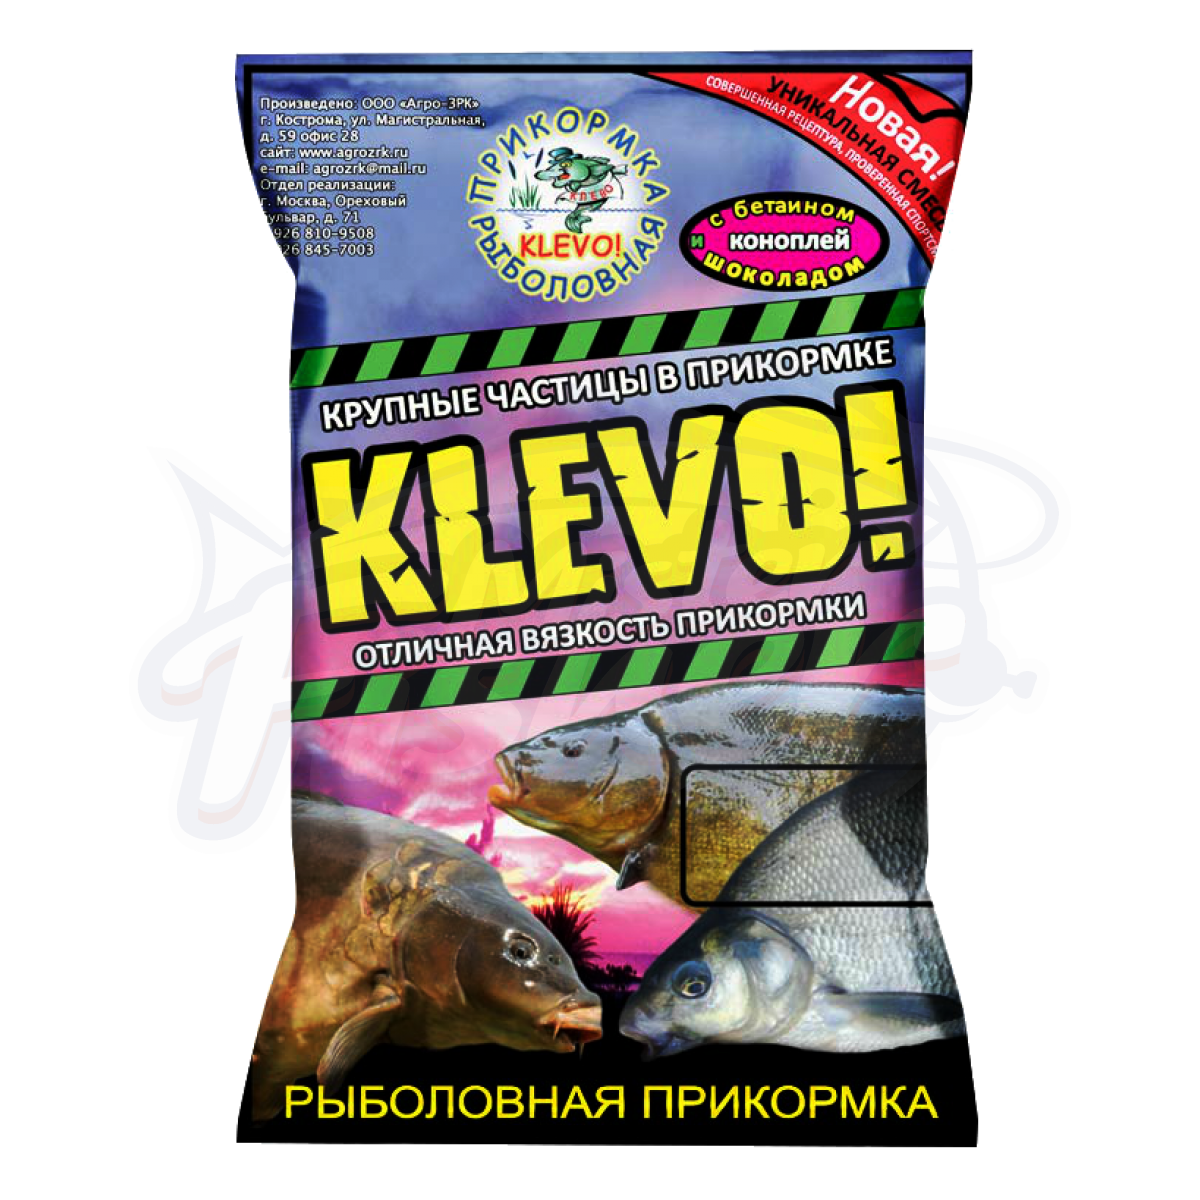 Фидерная прикормка (Питание) – купить в Москве, Казани | Рыболовный магазин «Карп Склад»